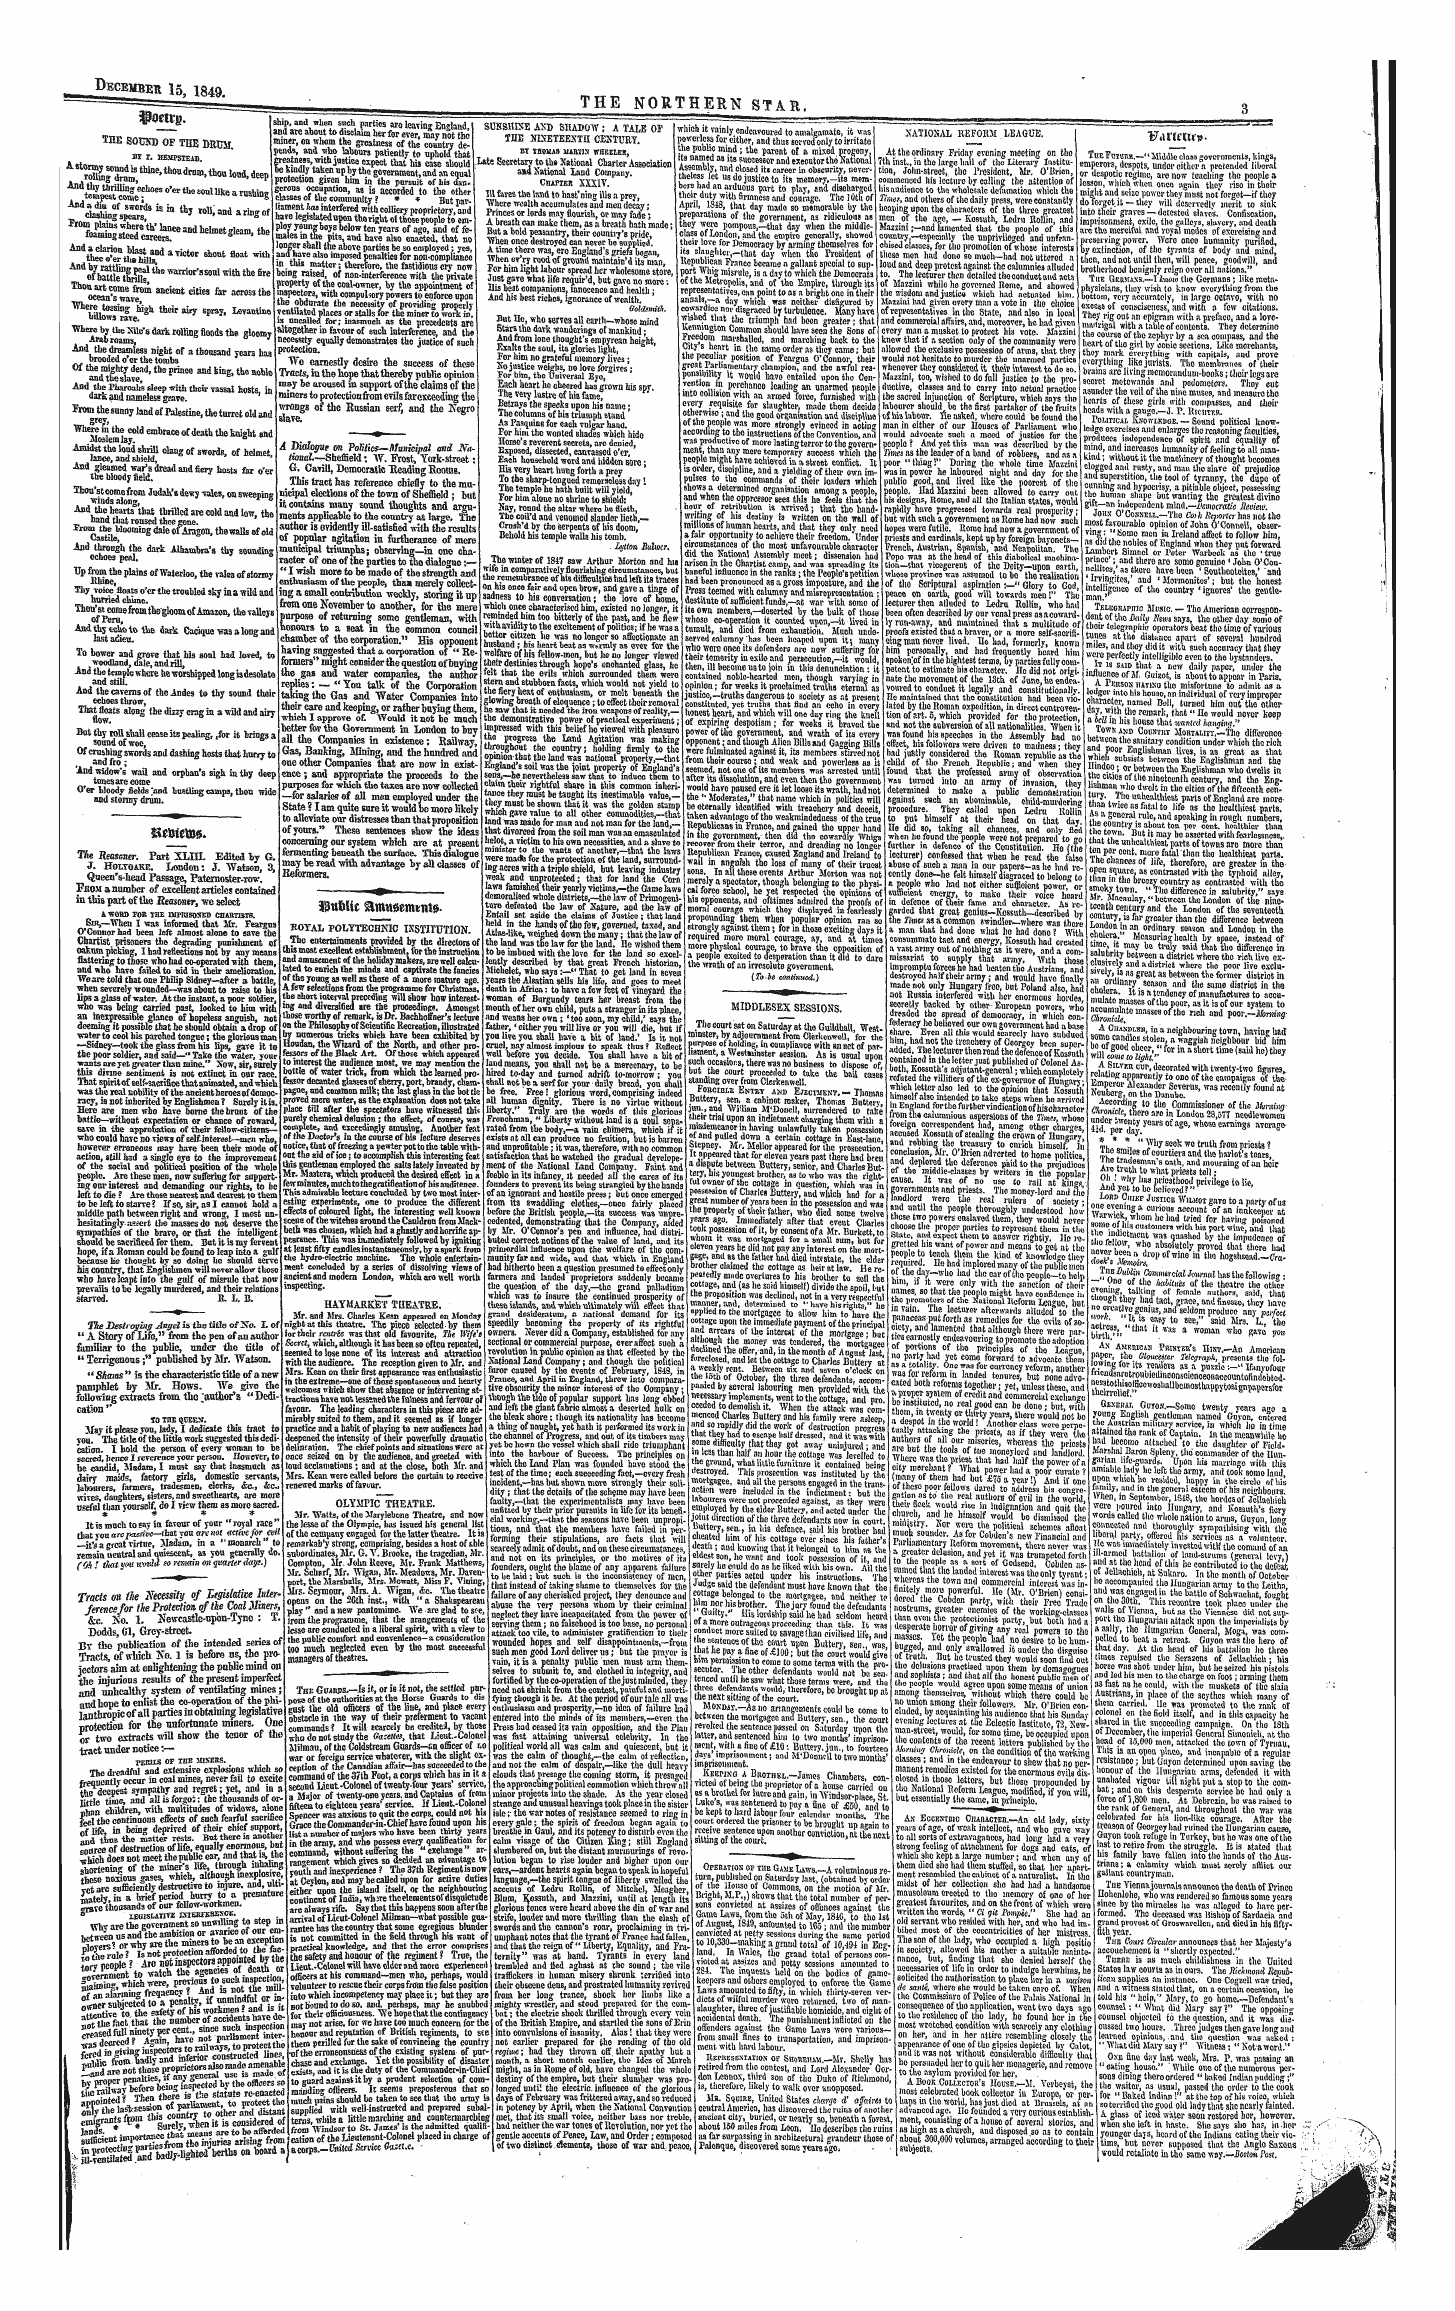 Northern Star (1837-1852): jS F Y, 1st edition - 3?U&!Tc Smrnamnmts.